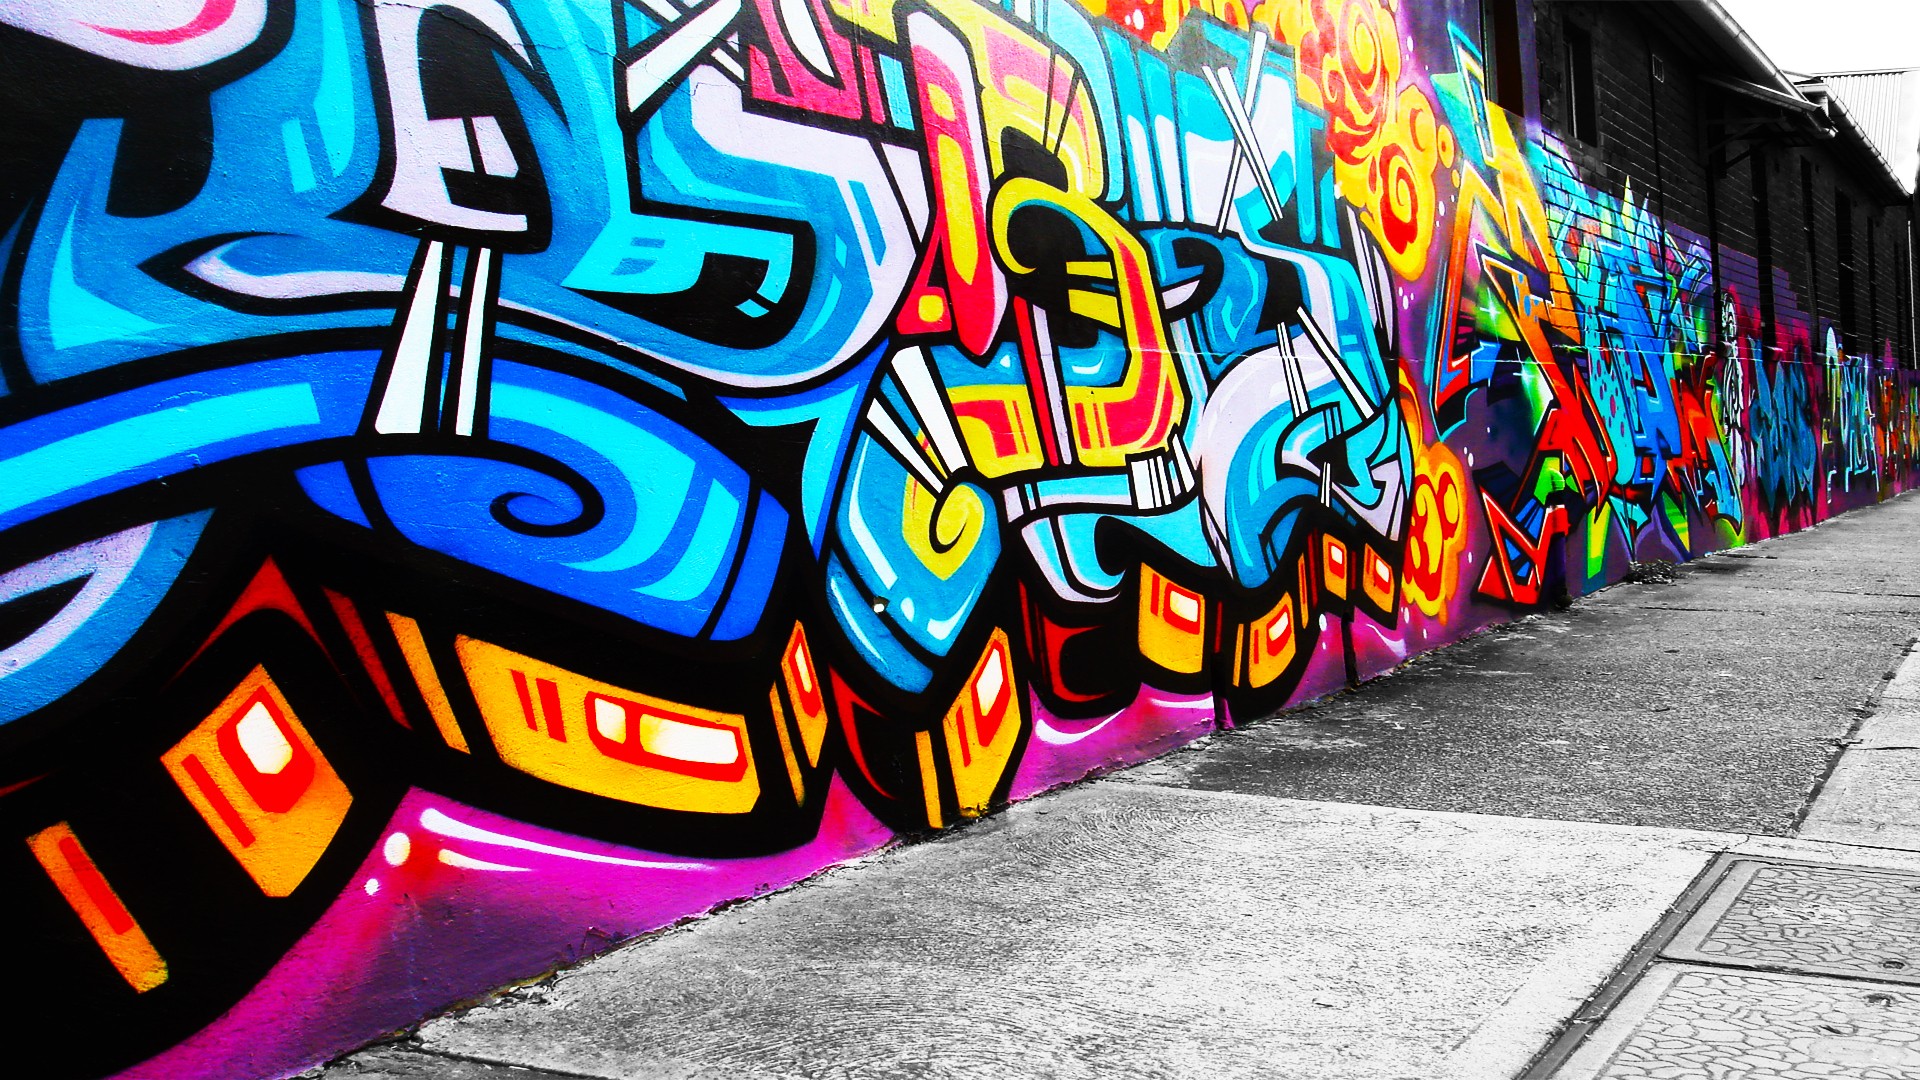 Street Art Graffiti Hd Wallpaper: Street Graffiti Artwork Wallpaper Area 1920x1080px